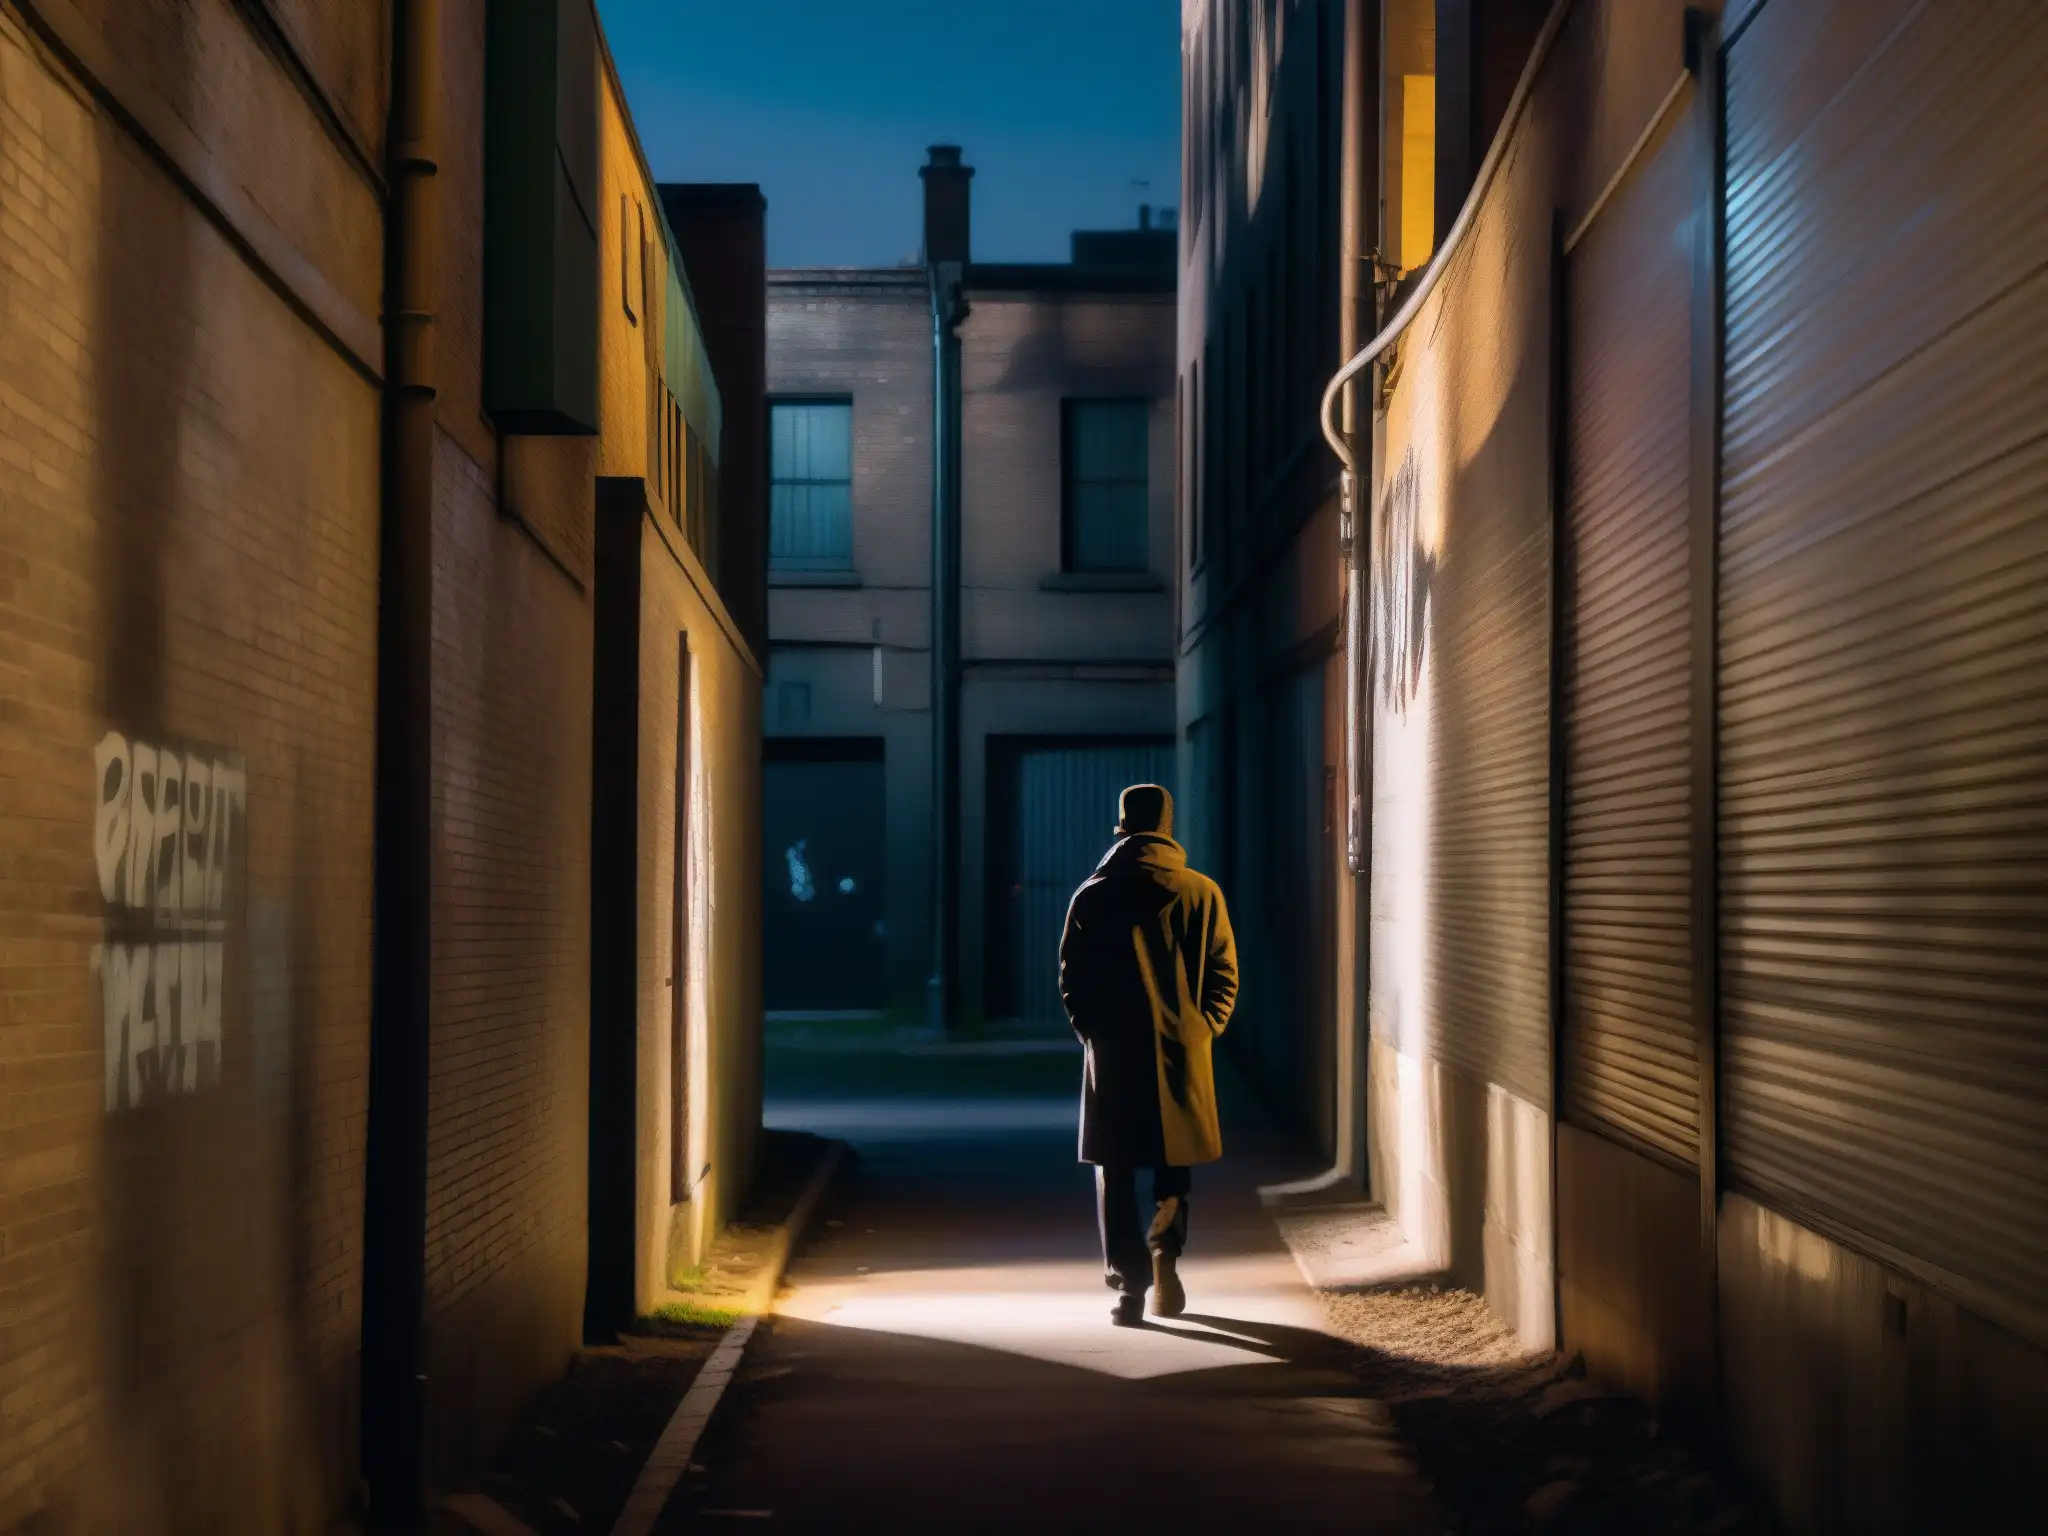 Un callejón oscuro de noche con paredes graffiteadas y una figura solitaria en las sombras, creando misterio y leyendas urbanas